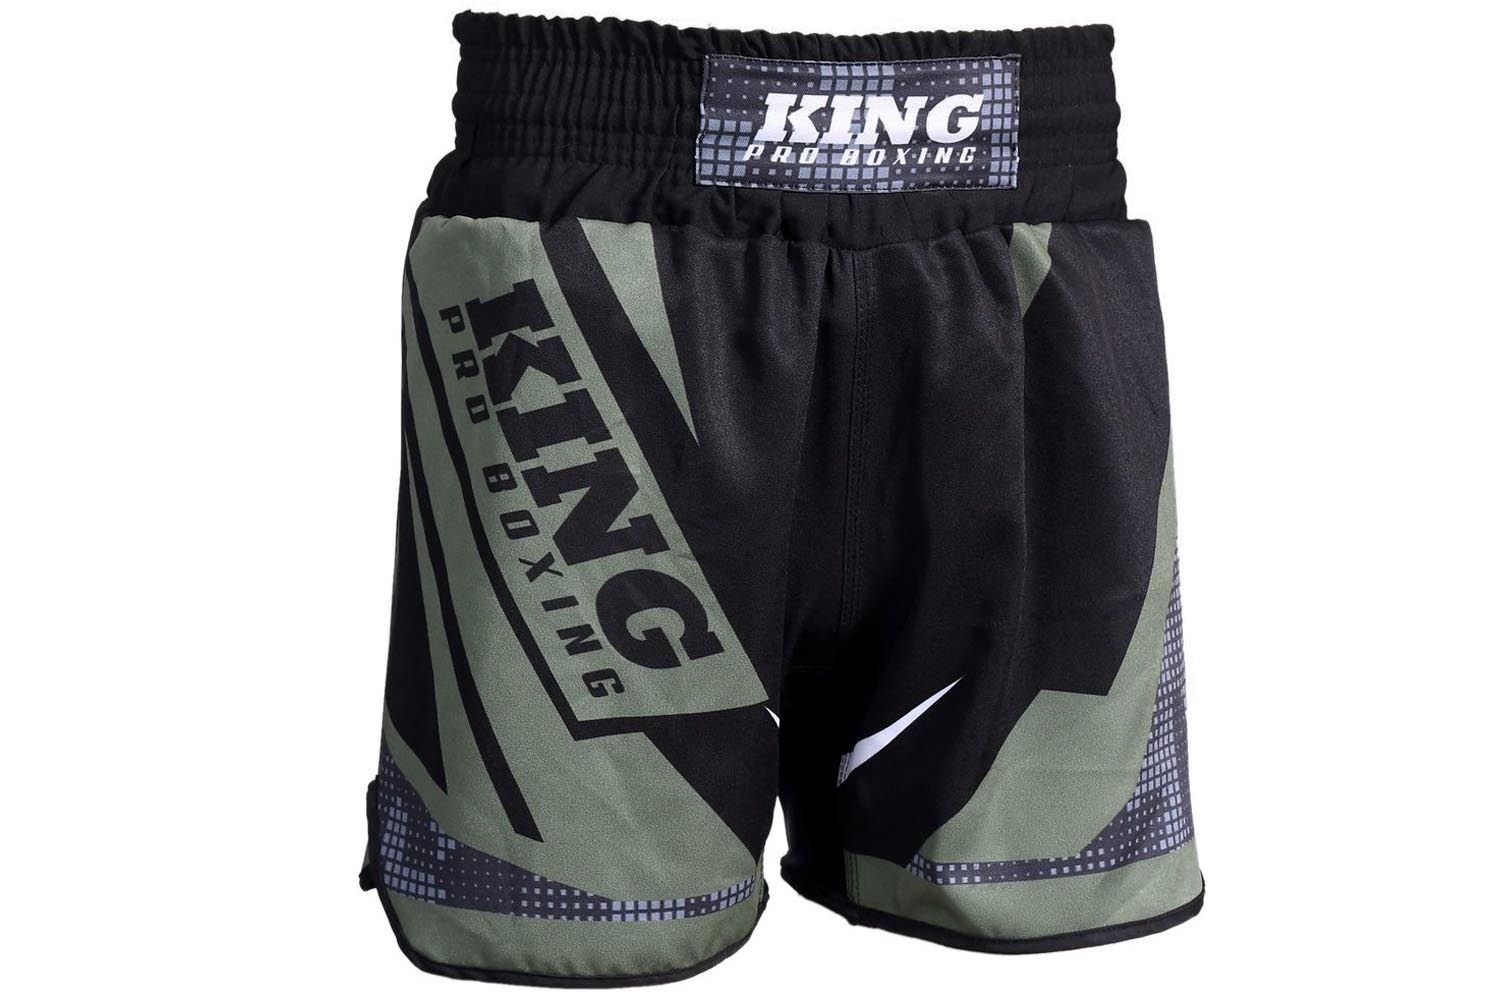 Pantalones MMA (Fight Shorts) - MMA shorts